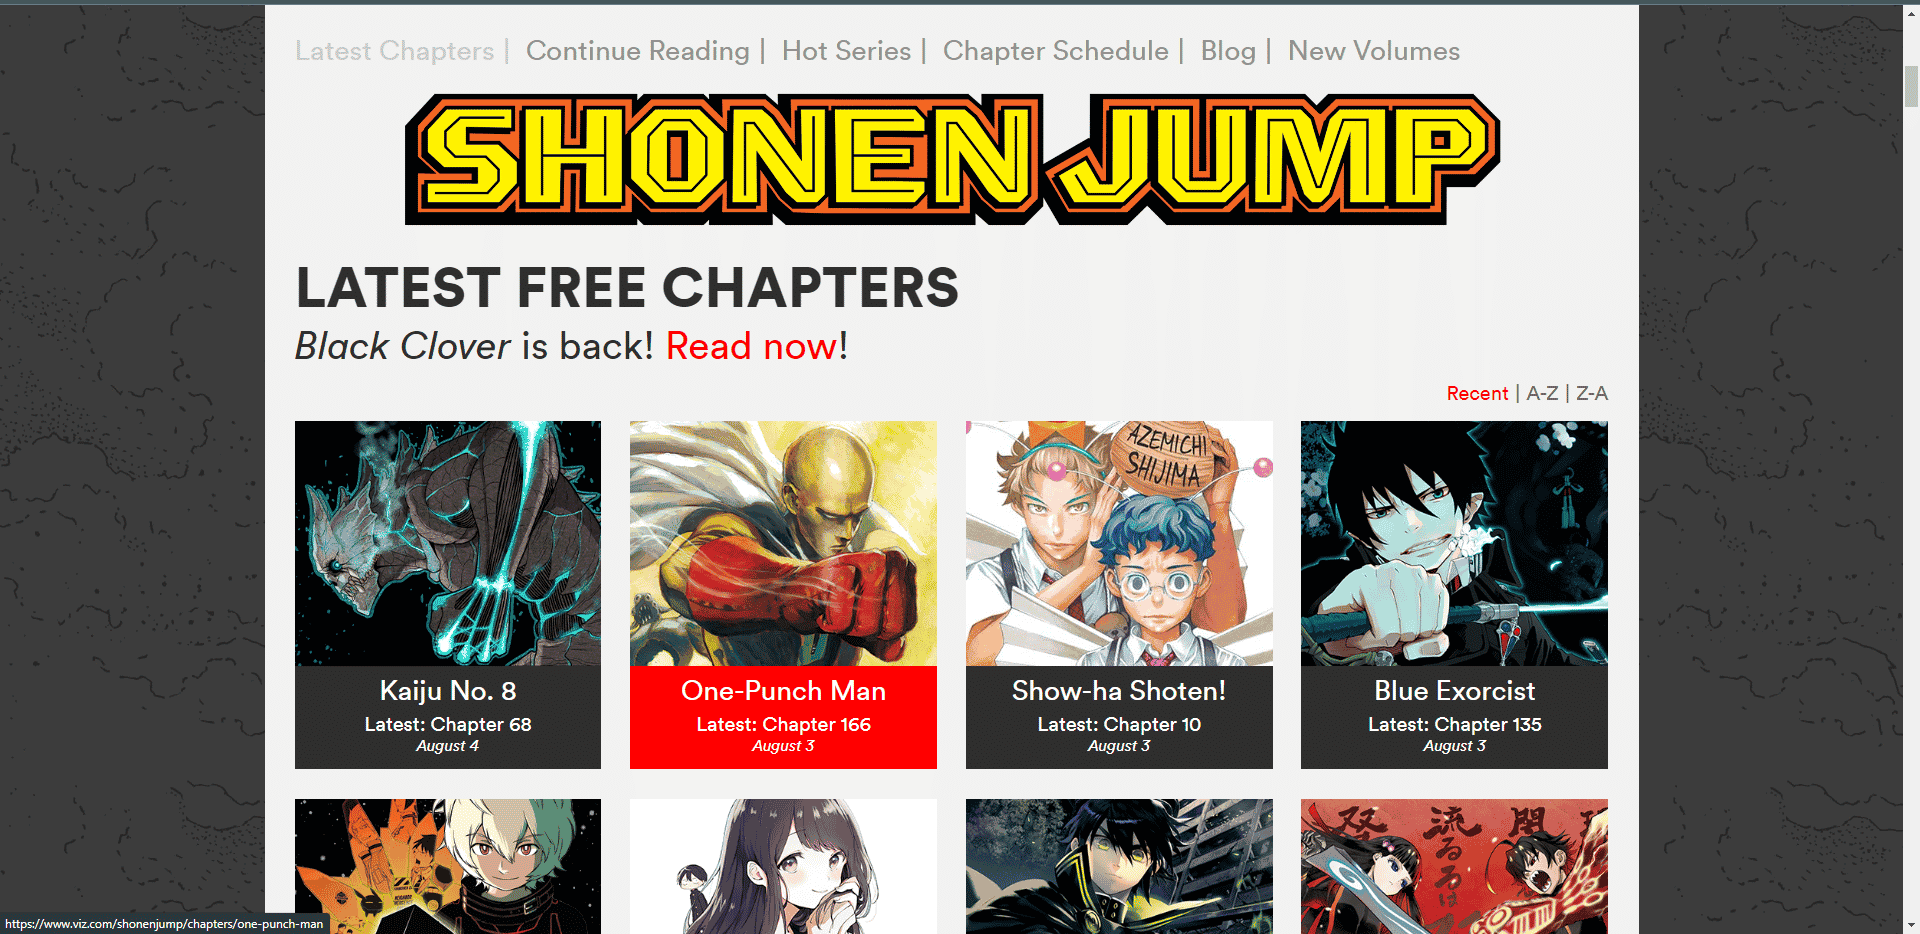 VIZ MANGA official website with Shonen jump section